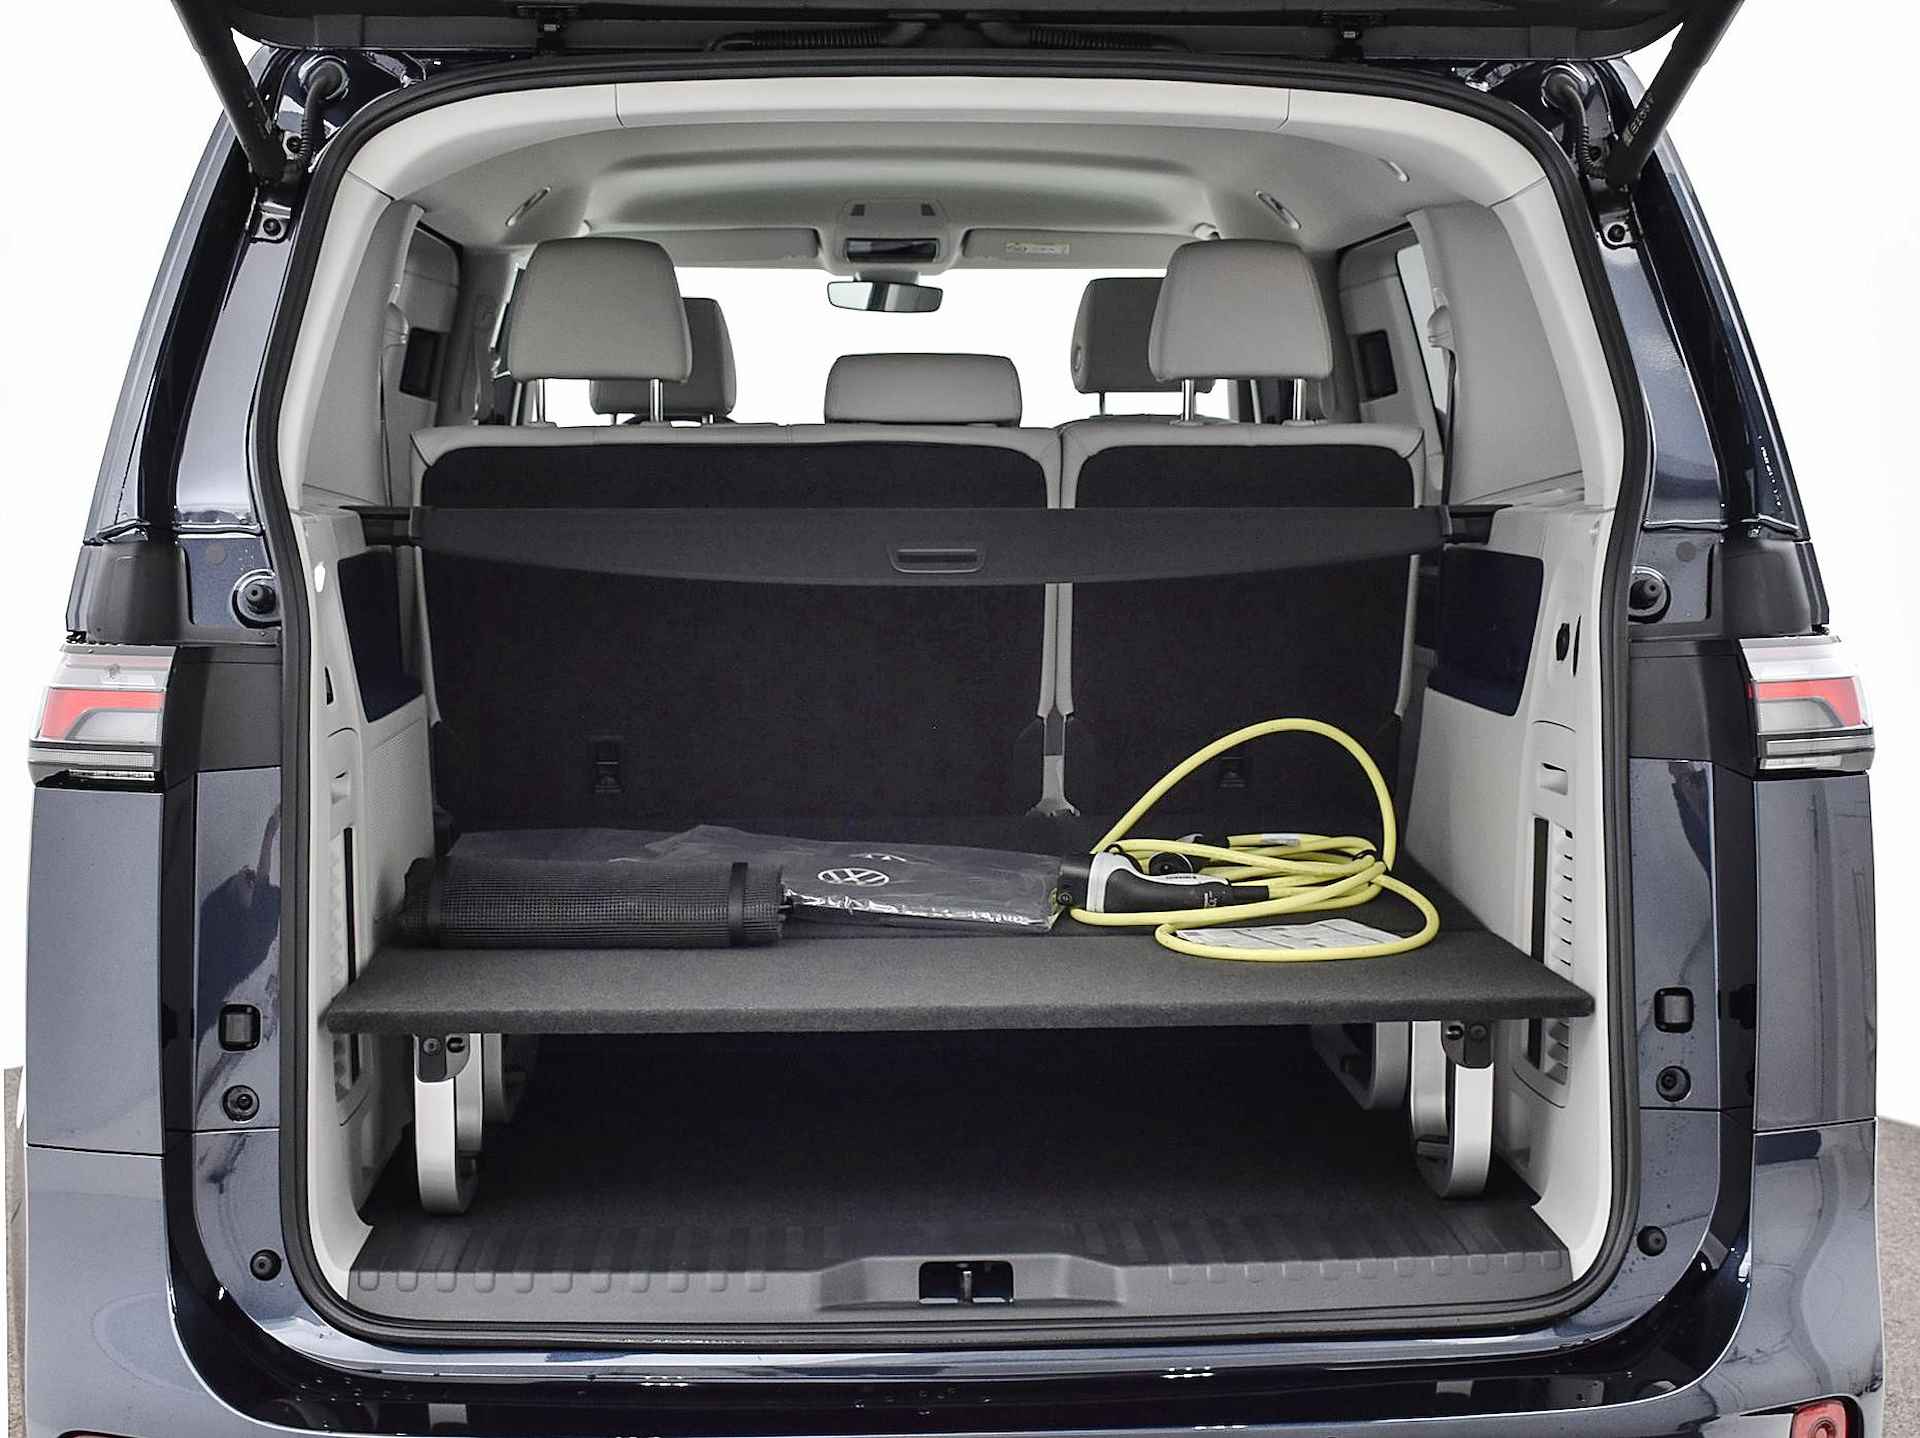 Volkswagen ID. Buzz pro advantage Elektromotor 150 kW / 204 pk electr. aandrijving · Assistance pakket · Design pakket · multimedia pakket plus · open & close pakket plus · trekhaak · MEGA Sale - 28/40